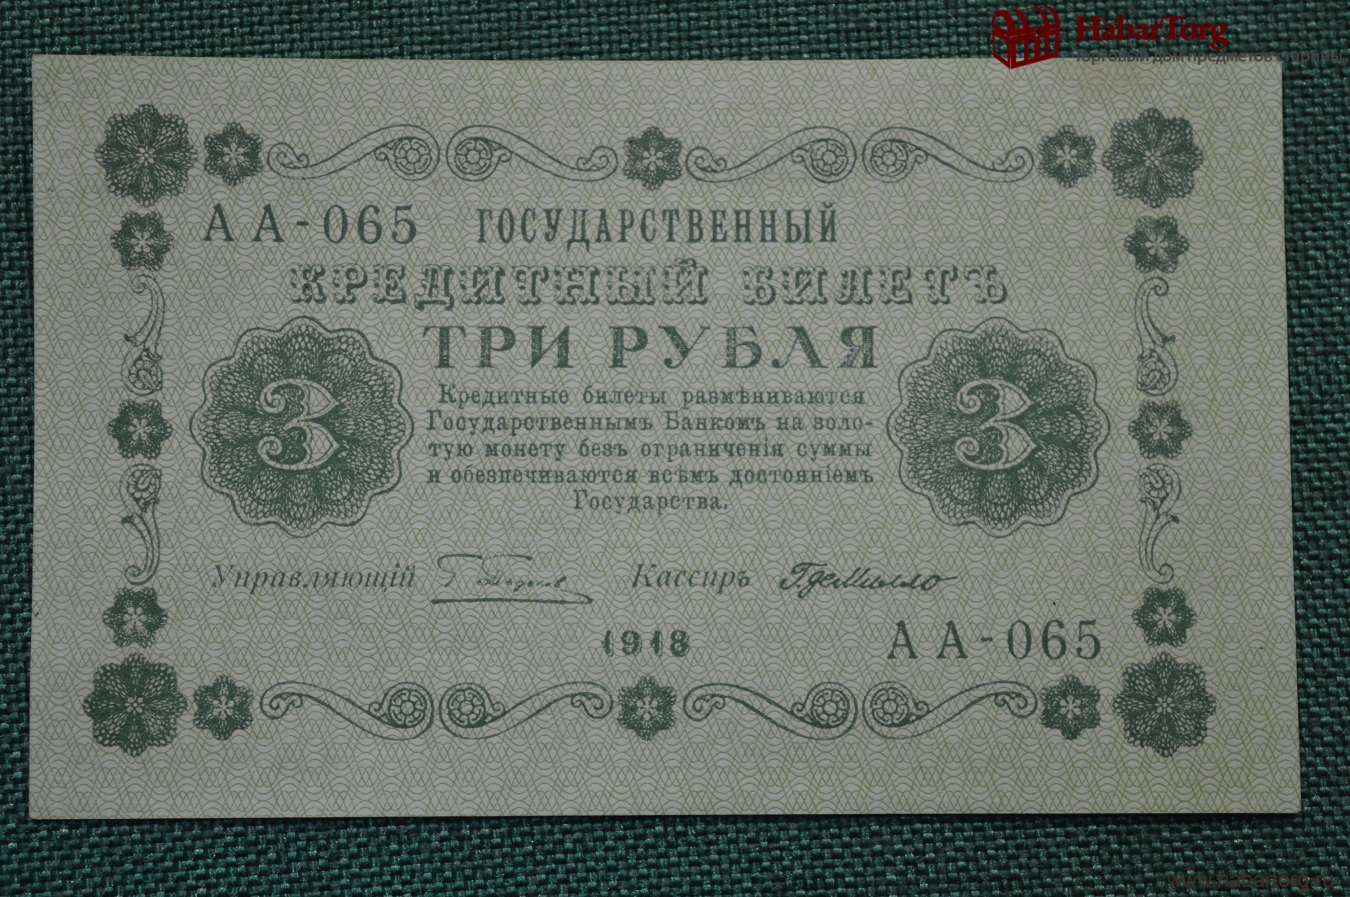 52 рубля 3. 3 Рубля 1875 года государственный кредитный билет. Царские три рубля. 3 Рубля 1918. Государственный кредитный билет 1918 года.